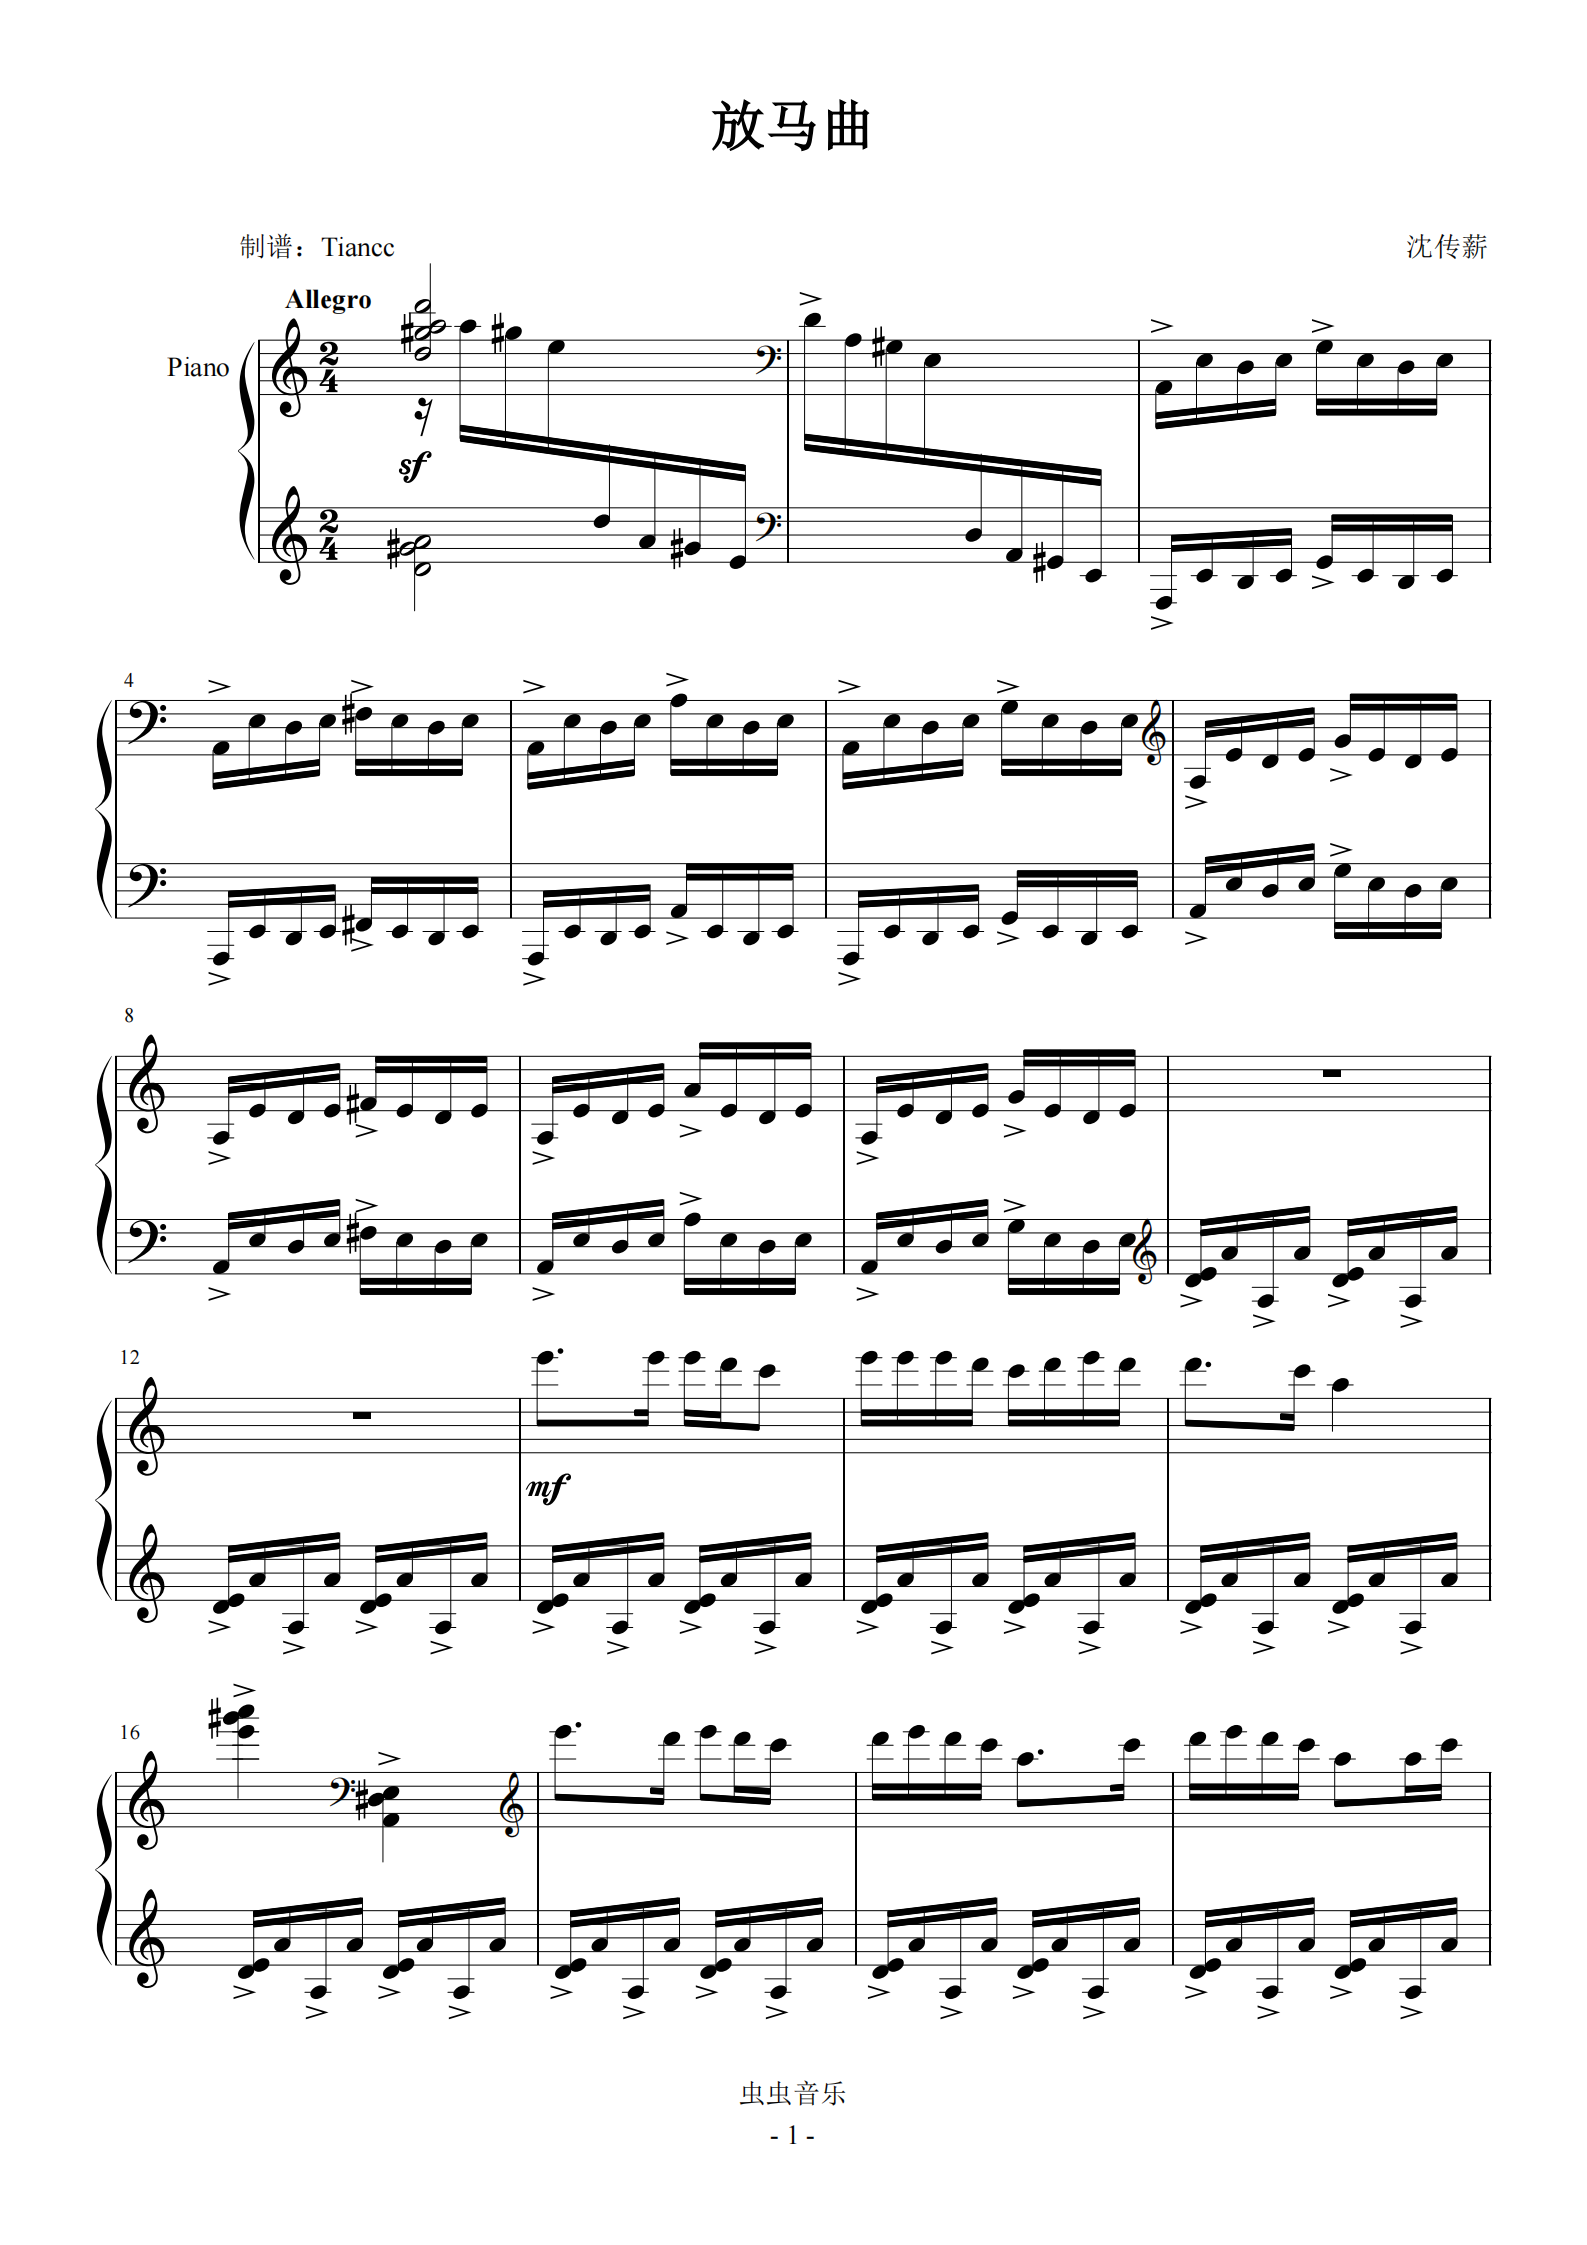 【8级-8-放马曲钢琴谱】_在线免费打印下载-爱弹琴乐谱网